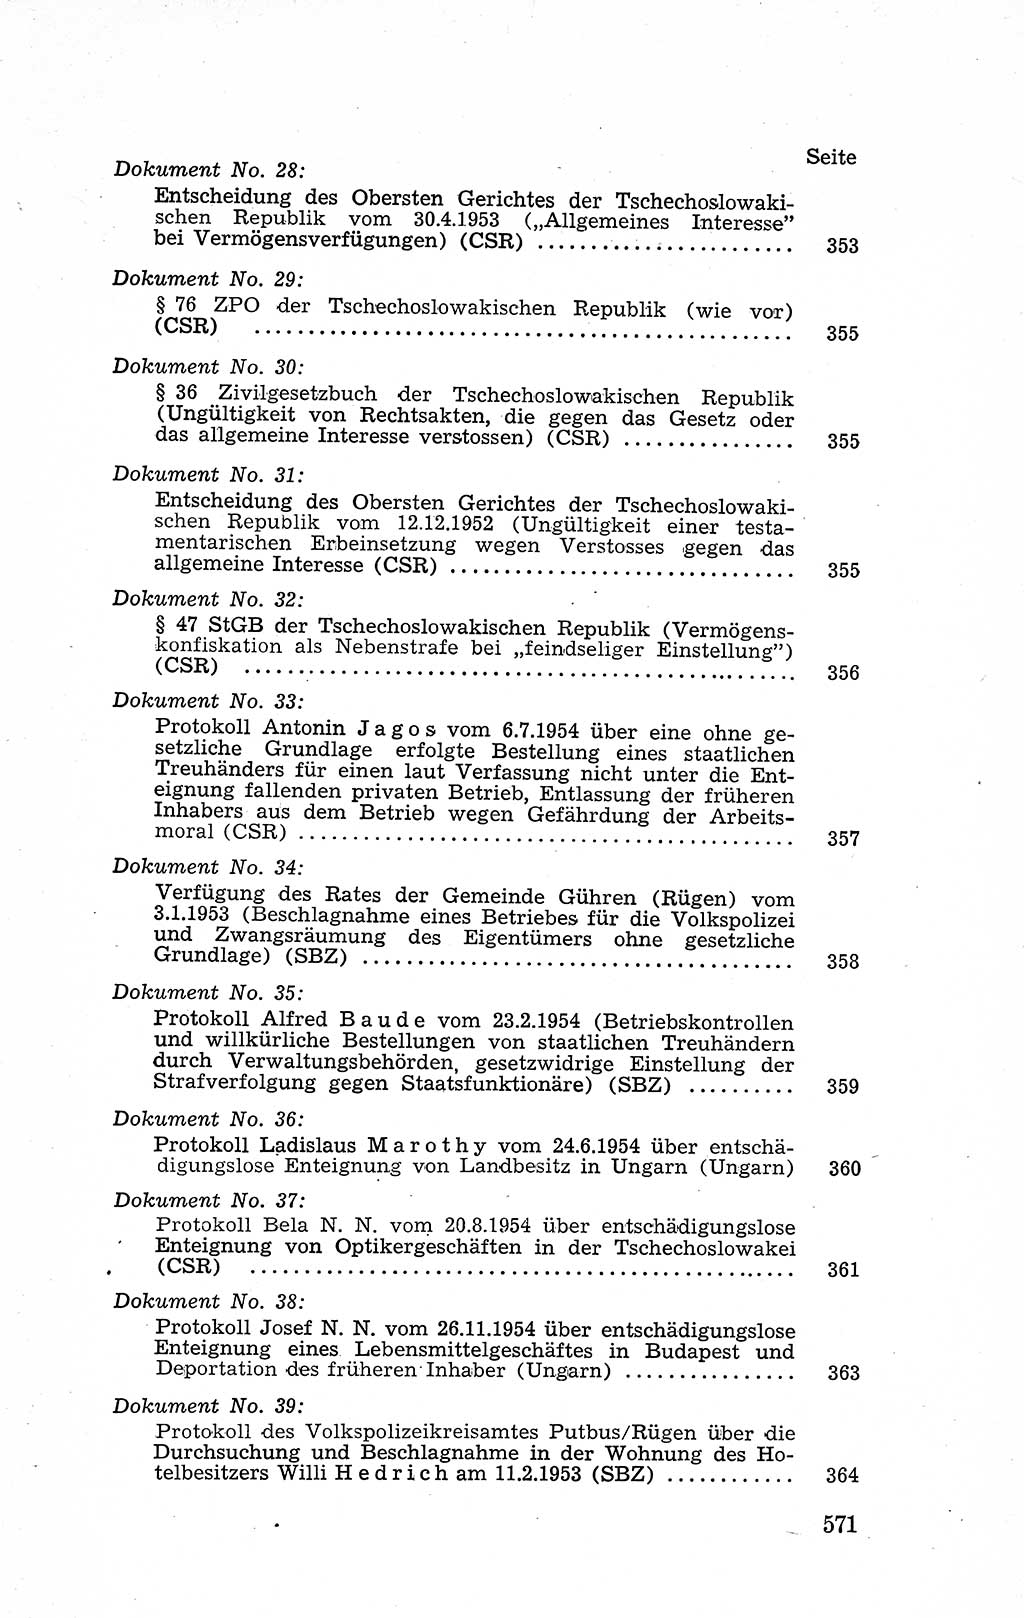 Recht in Fesseln, Dokumente, Internationale Juristen-Kommission [Bundesrepublik Deutschland (BRD)] 1955, Seite 571 (R. Dok. IJK BRD 1955, S. 571)